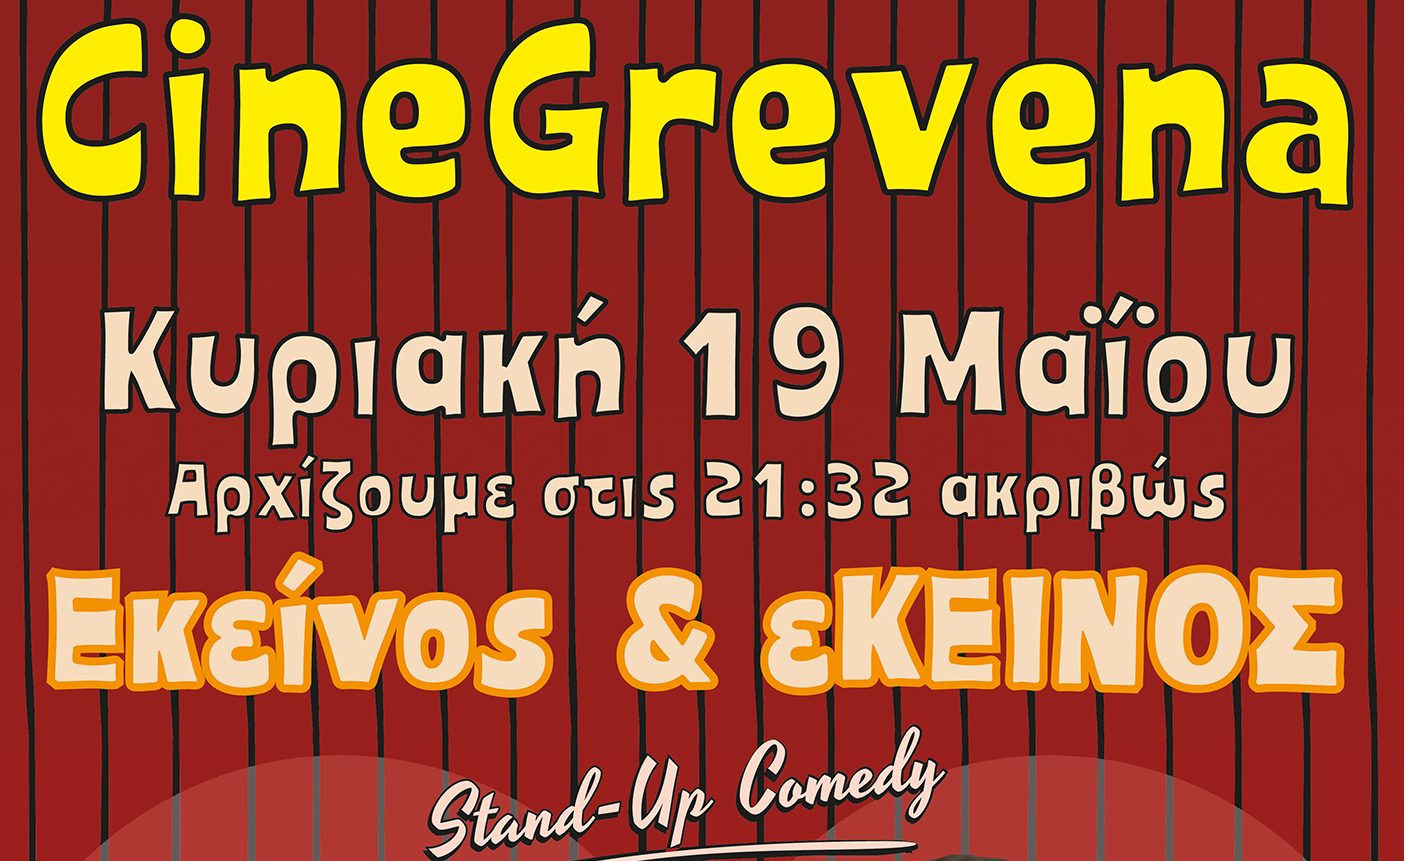 «Εκείνος κι  εΚΕΙΝΟΣ» για μία μοναδική παράσταση γέλιου στο Cine Grevena την Κυριακή 19 Μαΐου